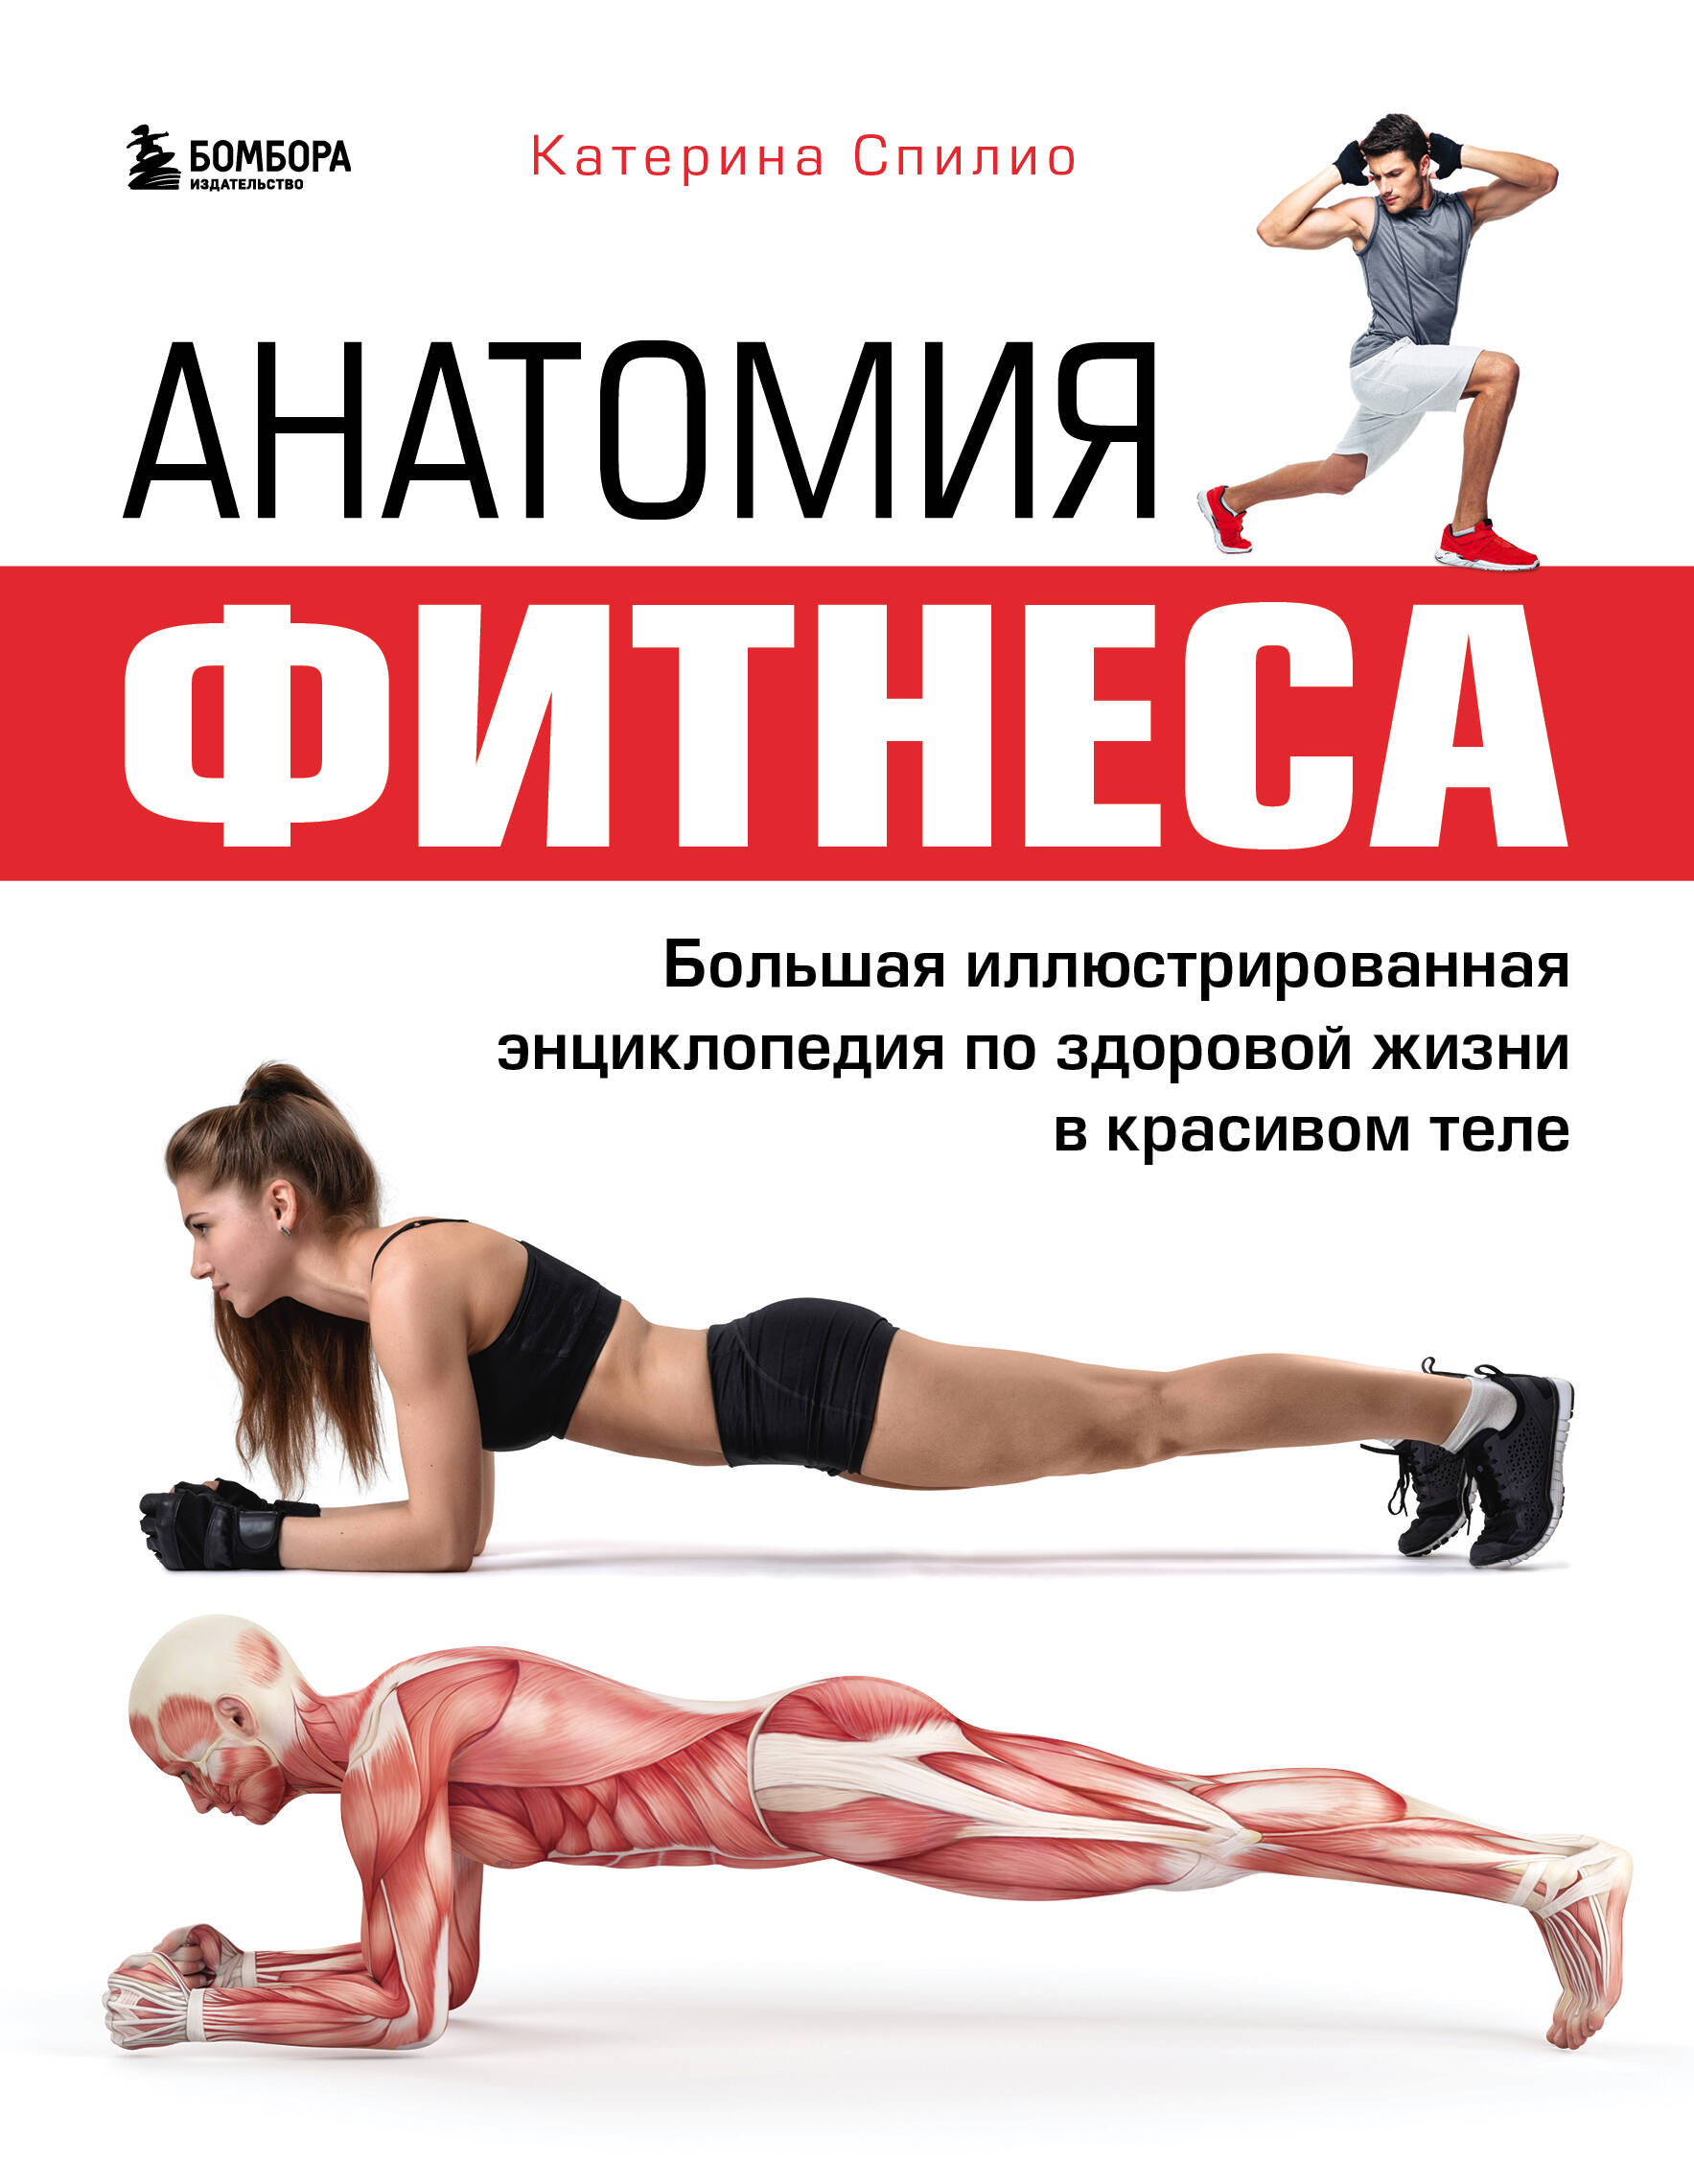 Спилио Катерина - Анатомия фитнеса. Большая иллюстрированная энциклопедия по здоровой жизни в красивом теле